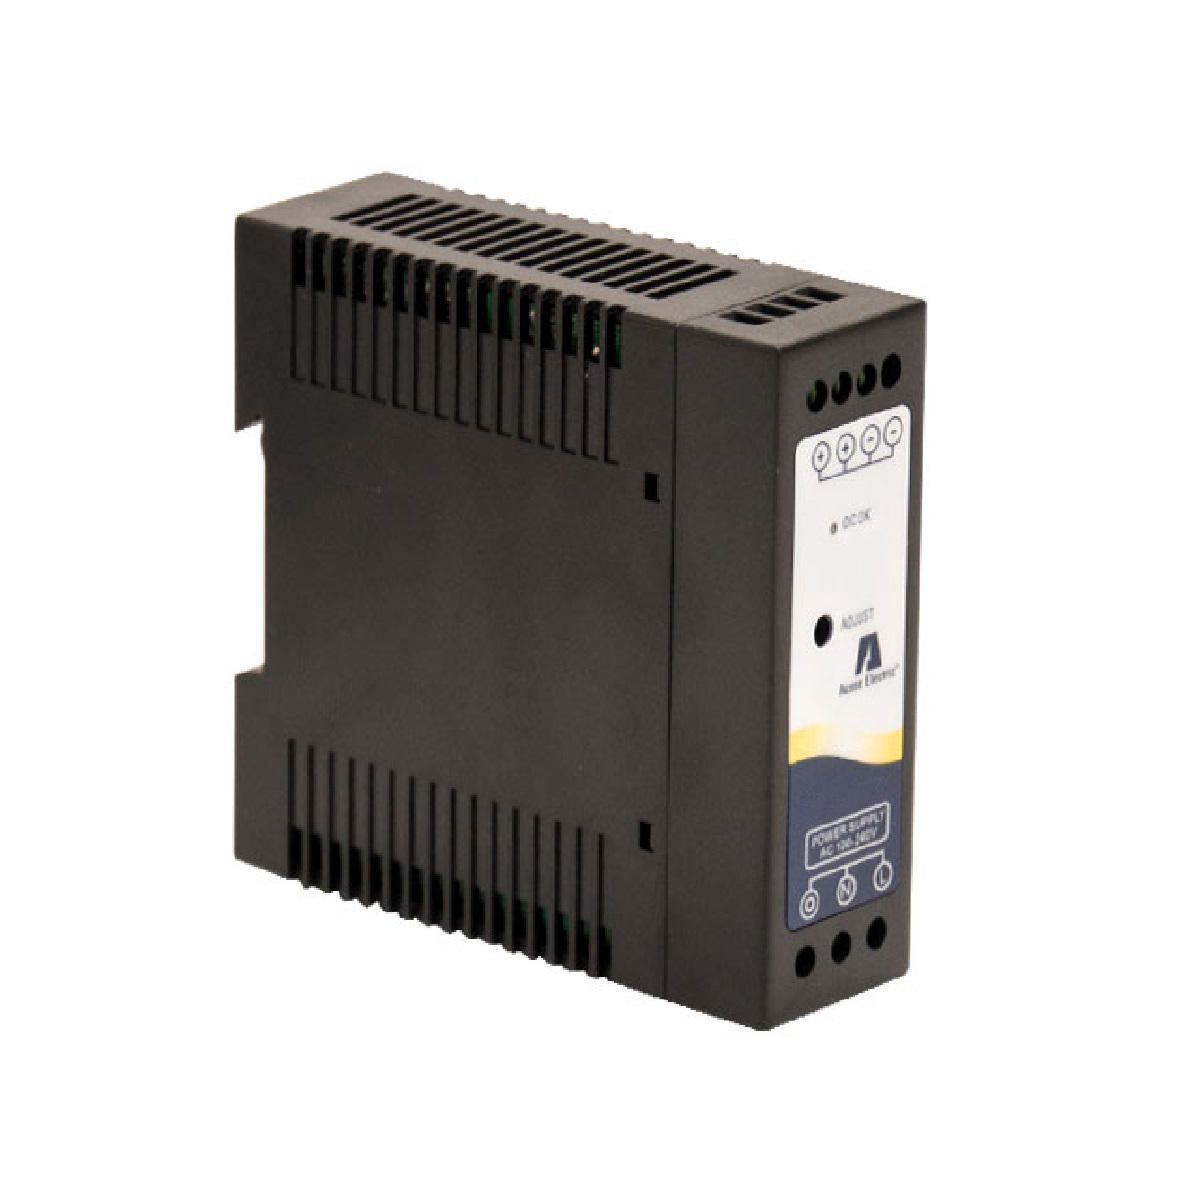 Bosch Tenovis Integral 3 Netzteil Power Supply 49.9901.4069 PD1-E-UV